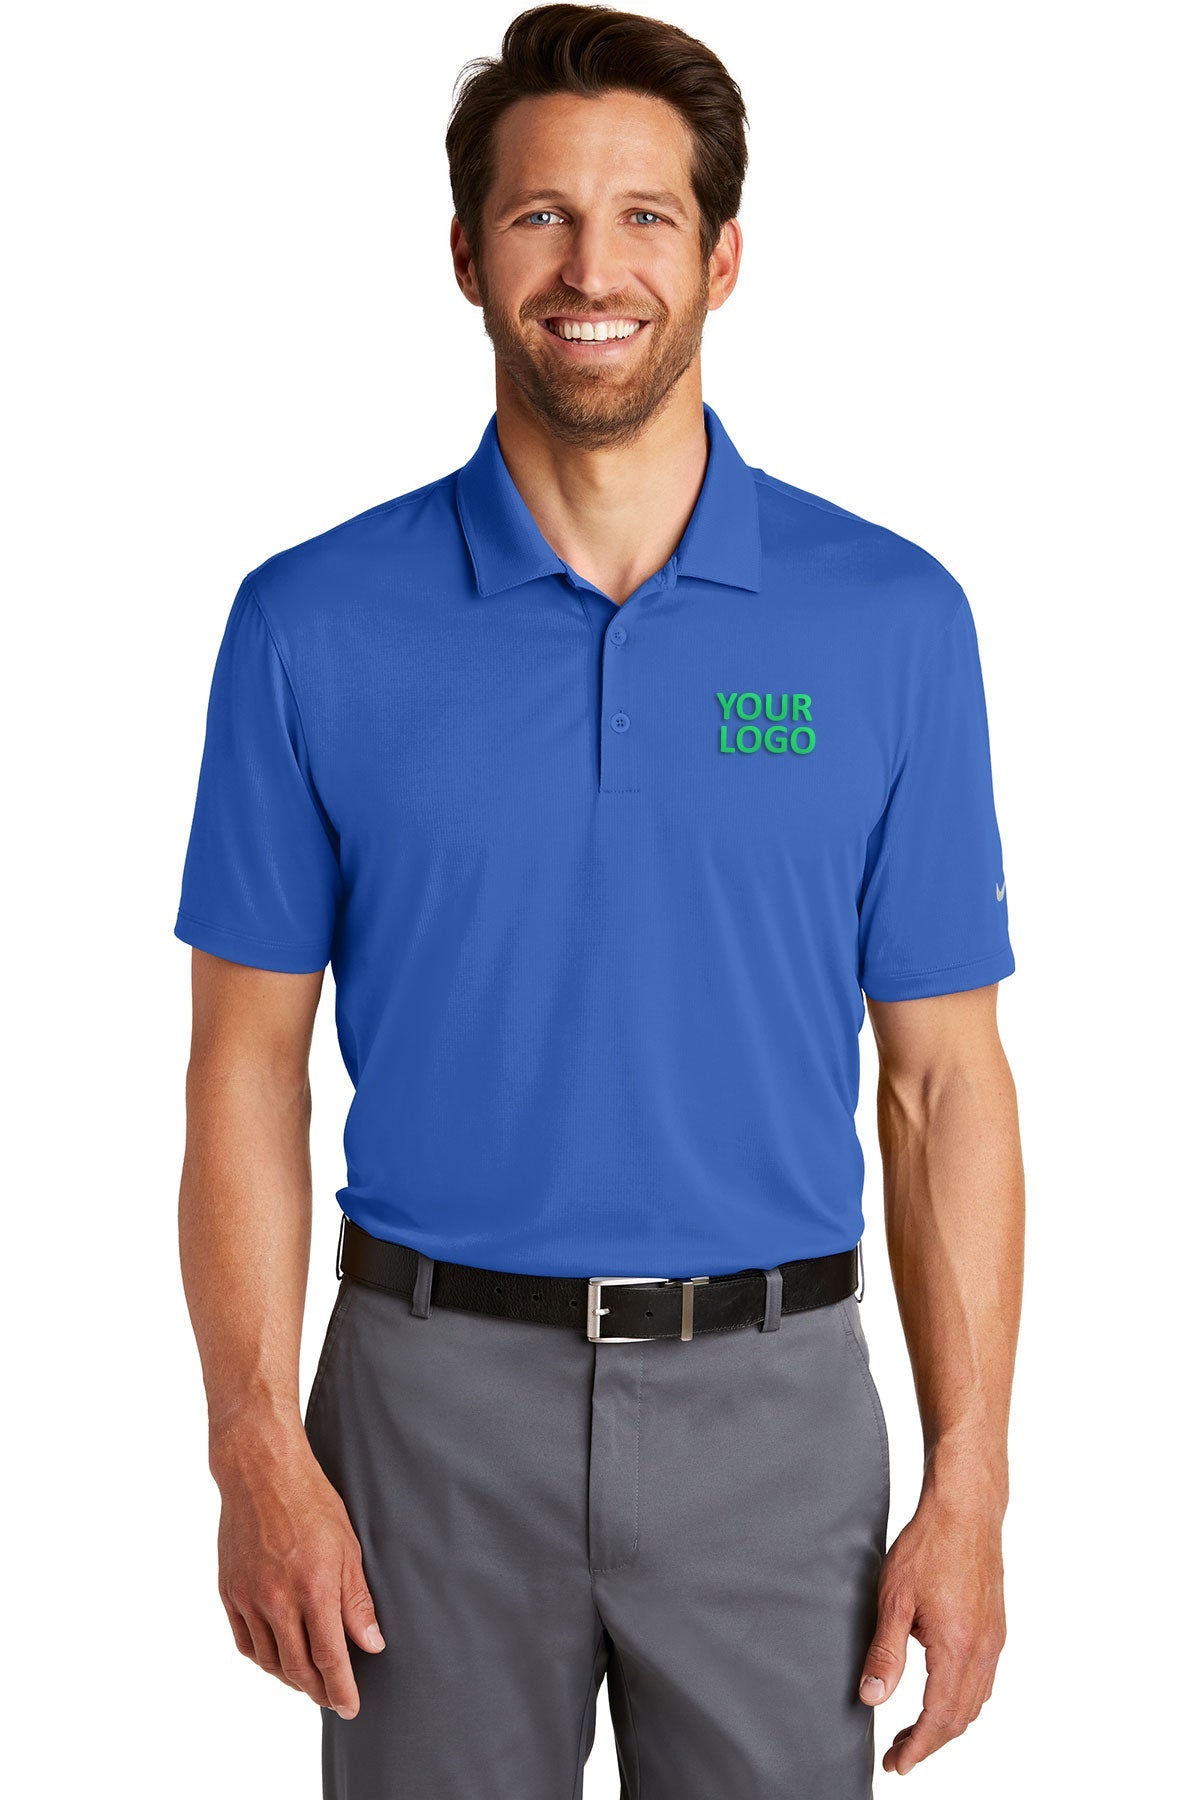 nike game royal 883681 custom made work polo shirts